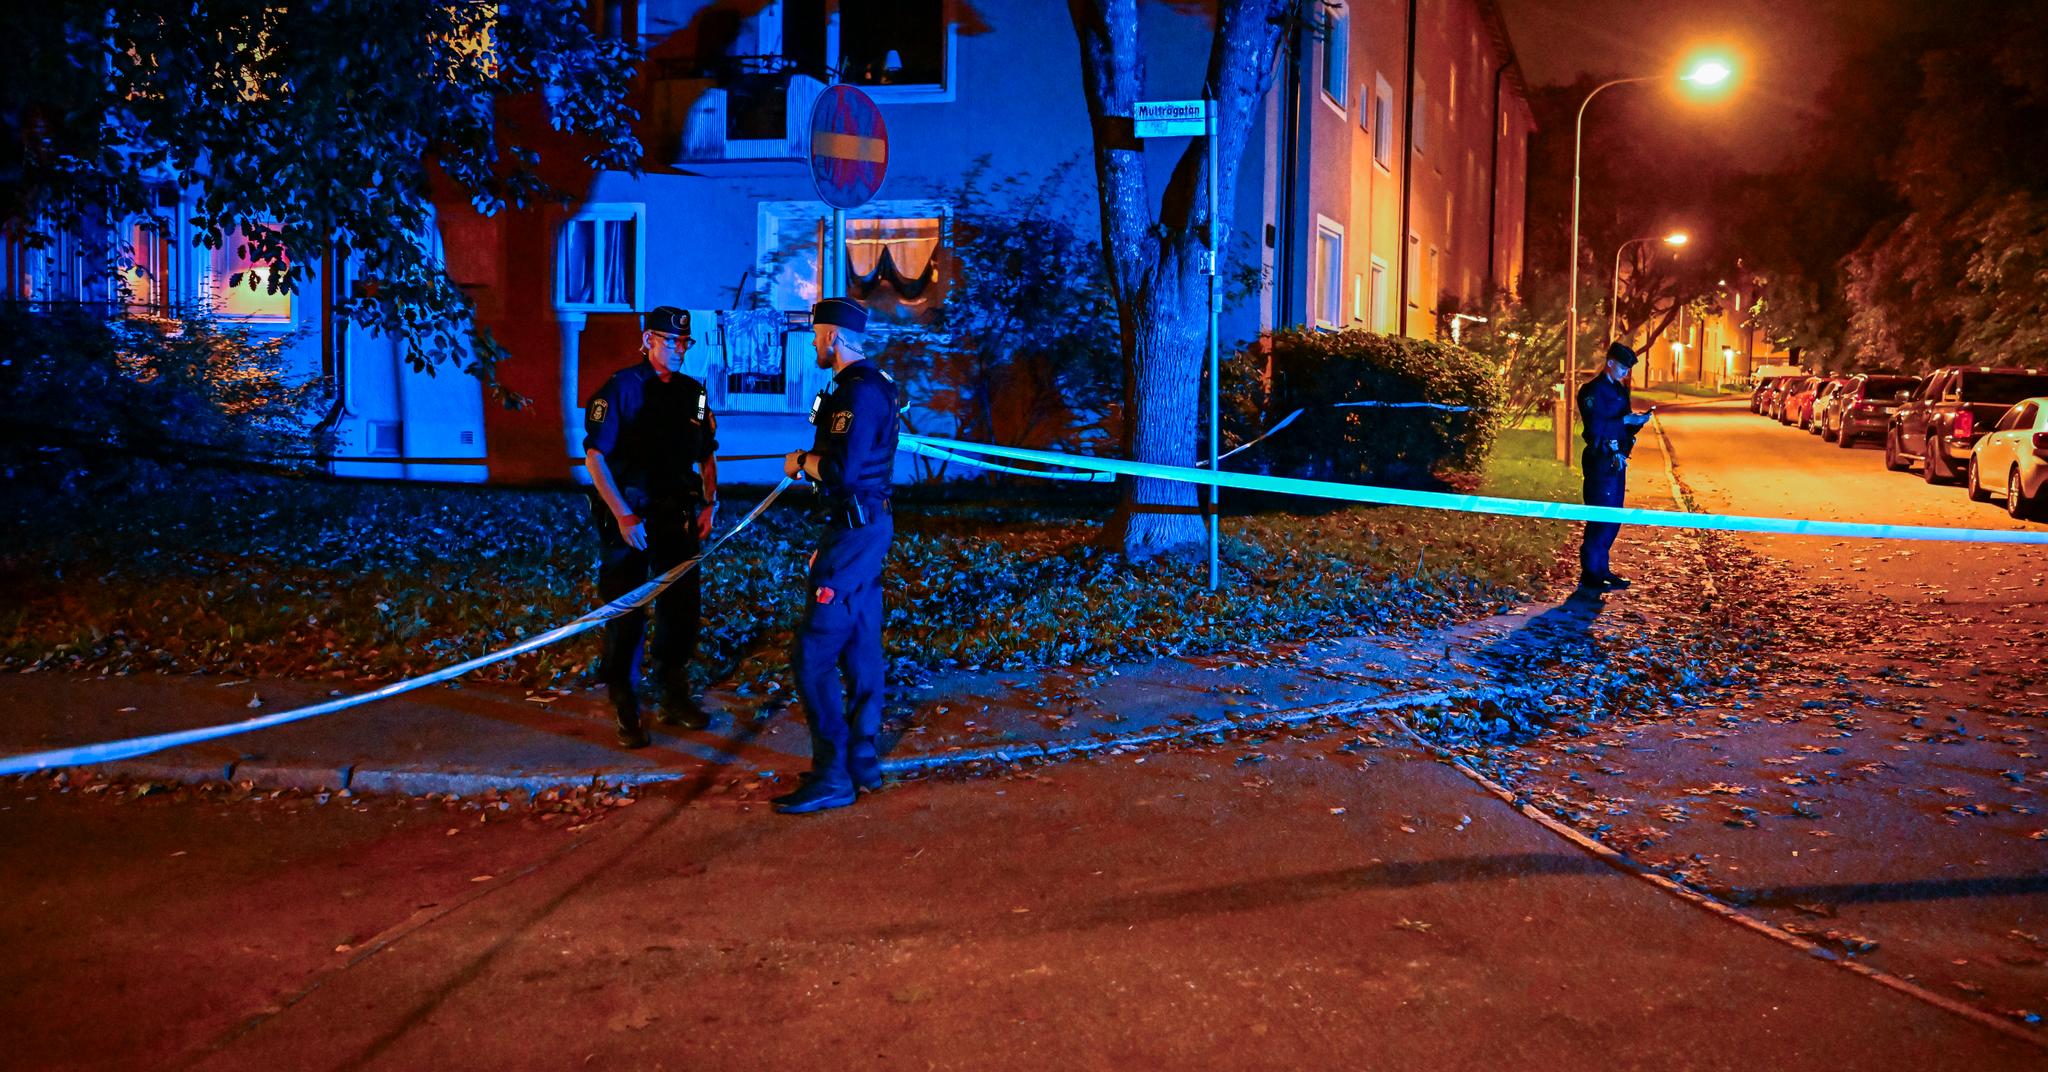 Svensk politi måtte rykke ut lørdag kveld etter nok en skyteepisode. En mann i 20-årene ble skutt og drept. Drapet kobles til konflikten internt i det såkalte Foxtrot-nettverket av flere svenske medier.